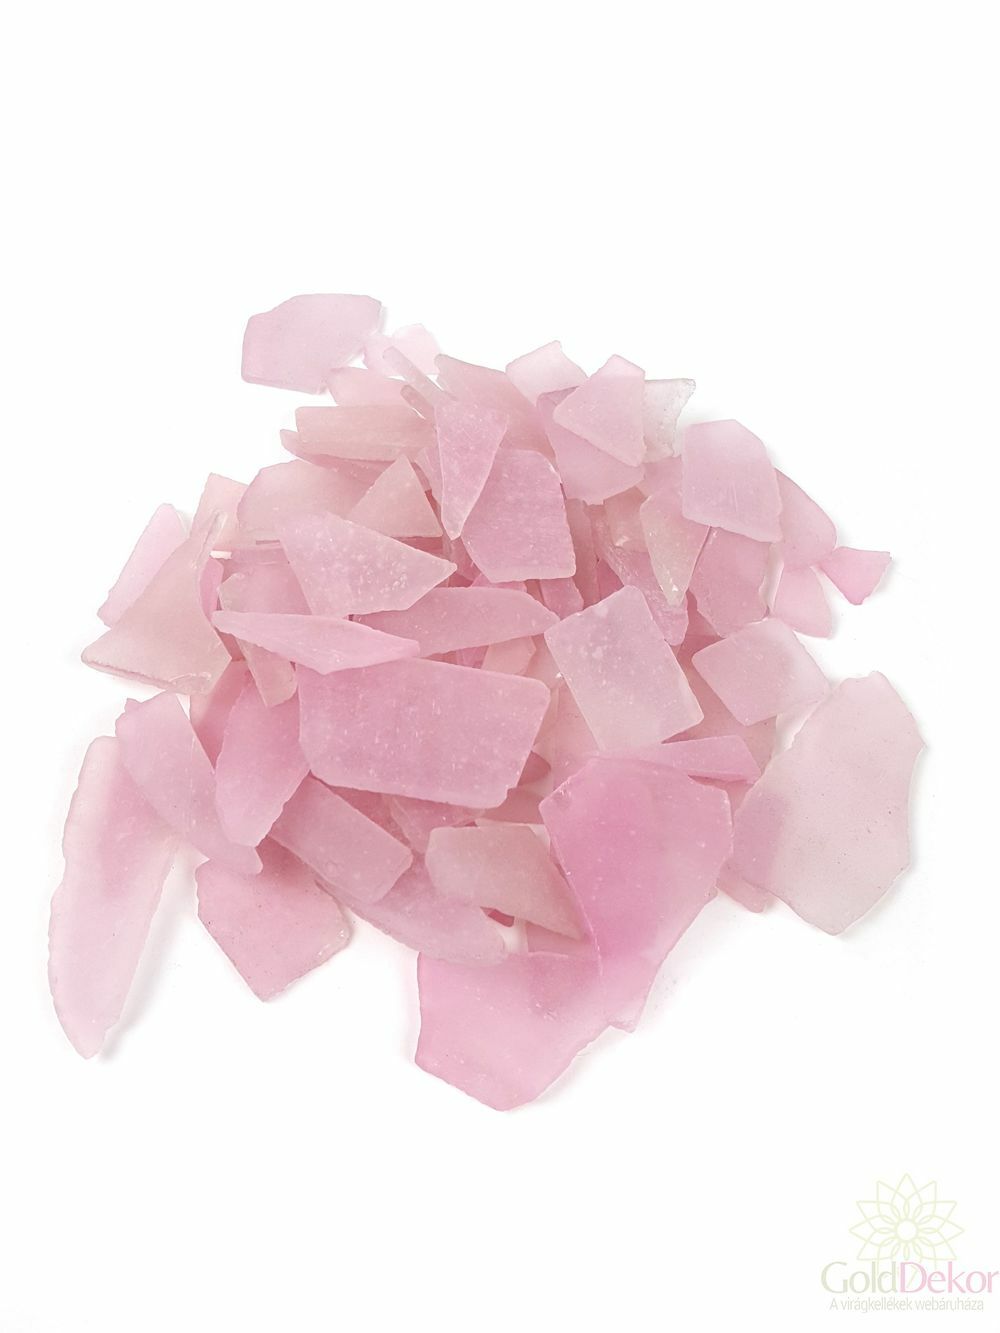 Dekor üveg kristály - Rózsaszín